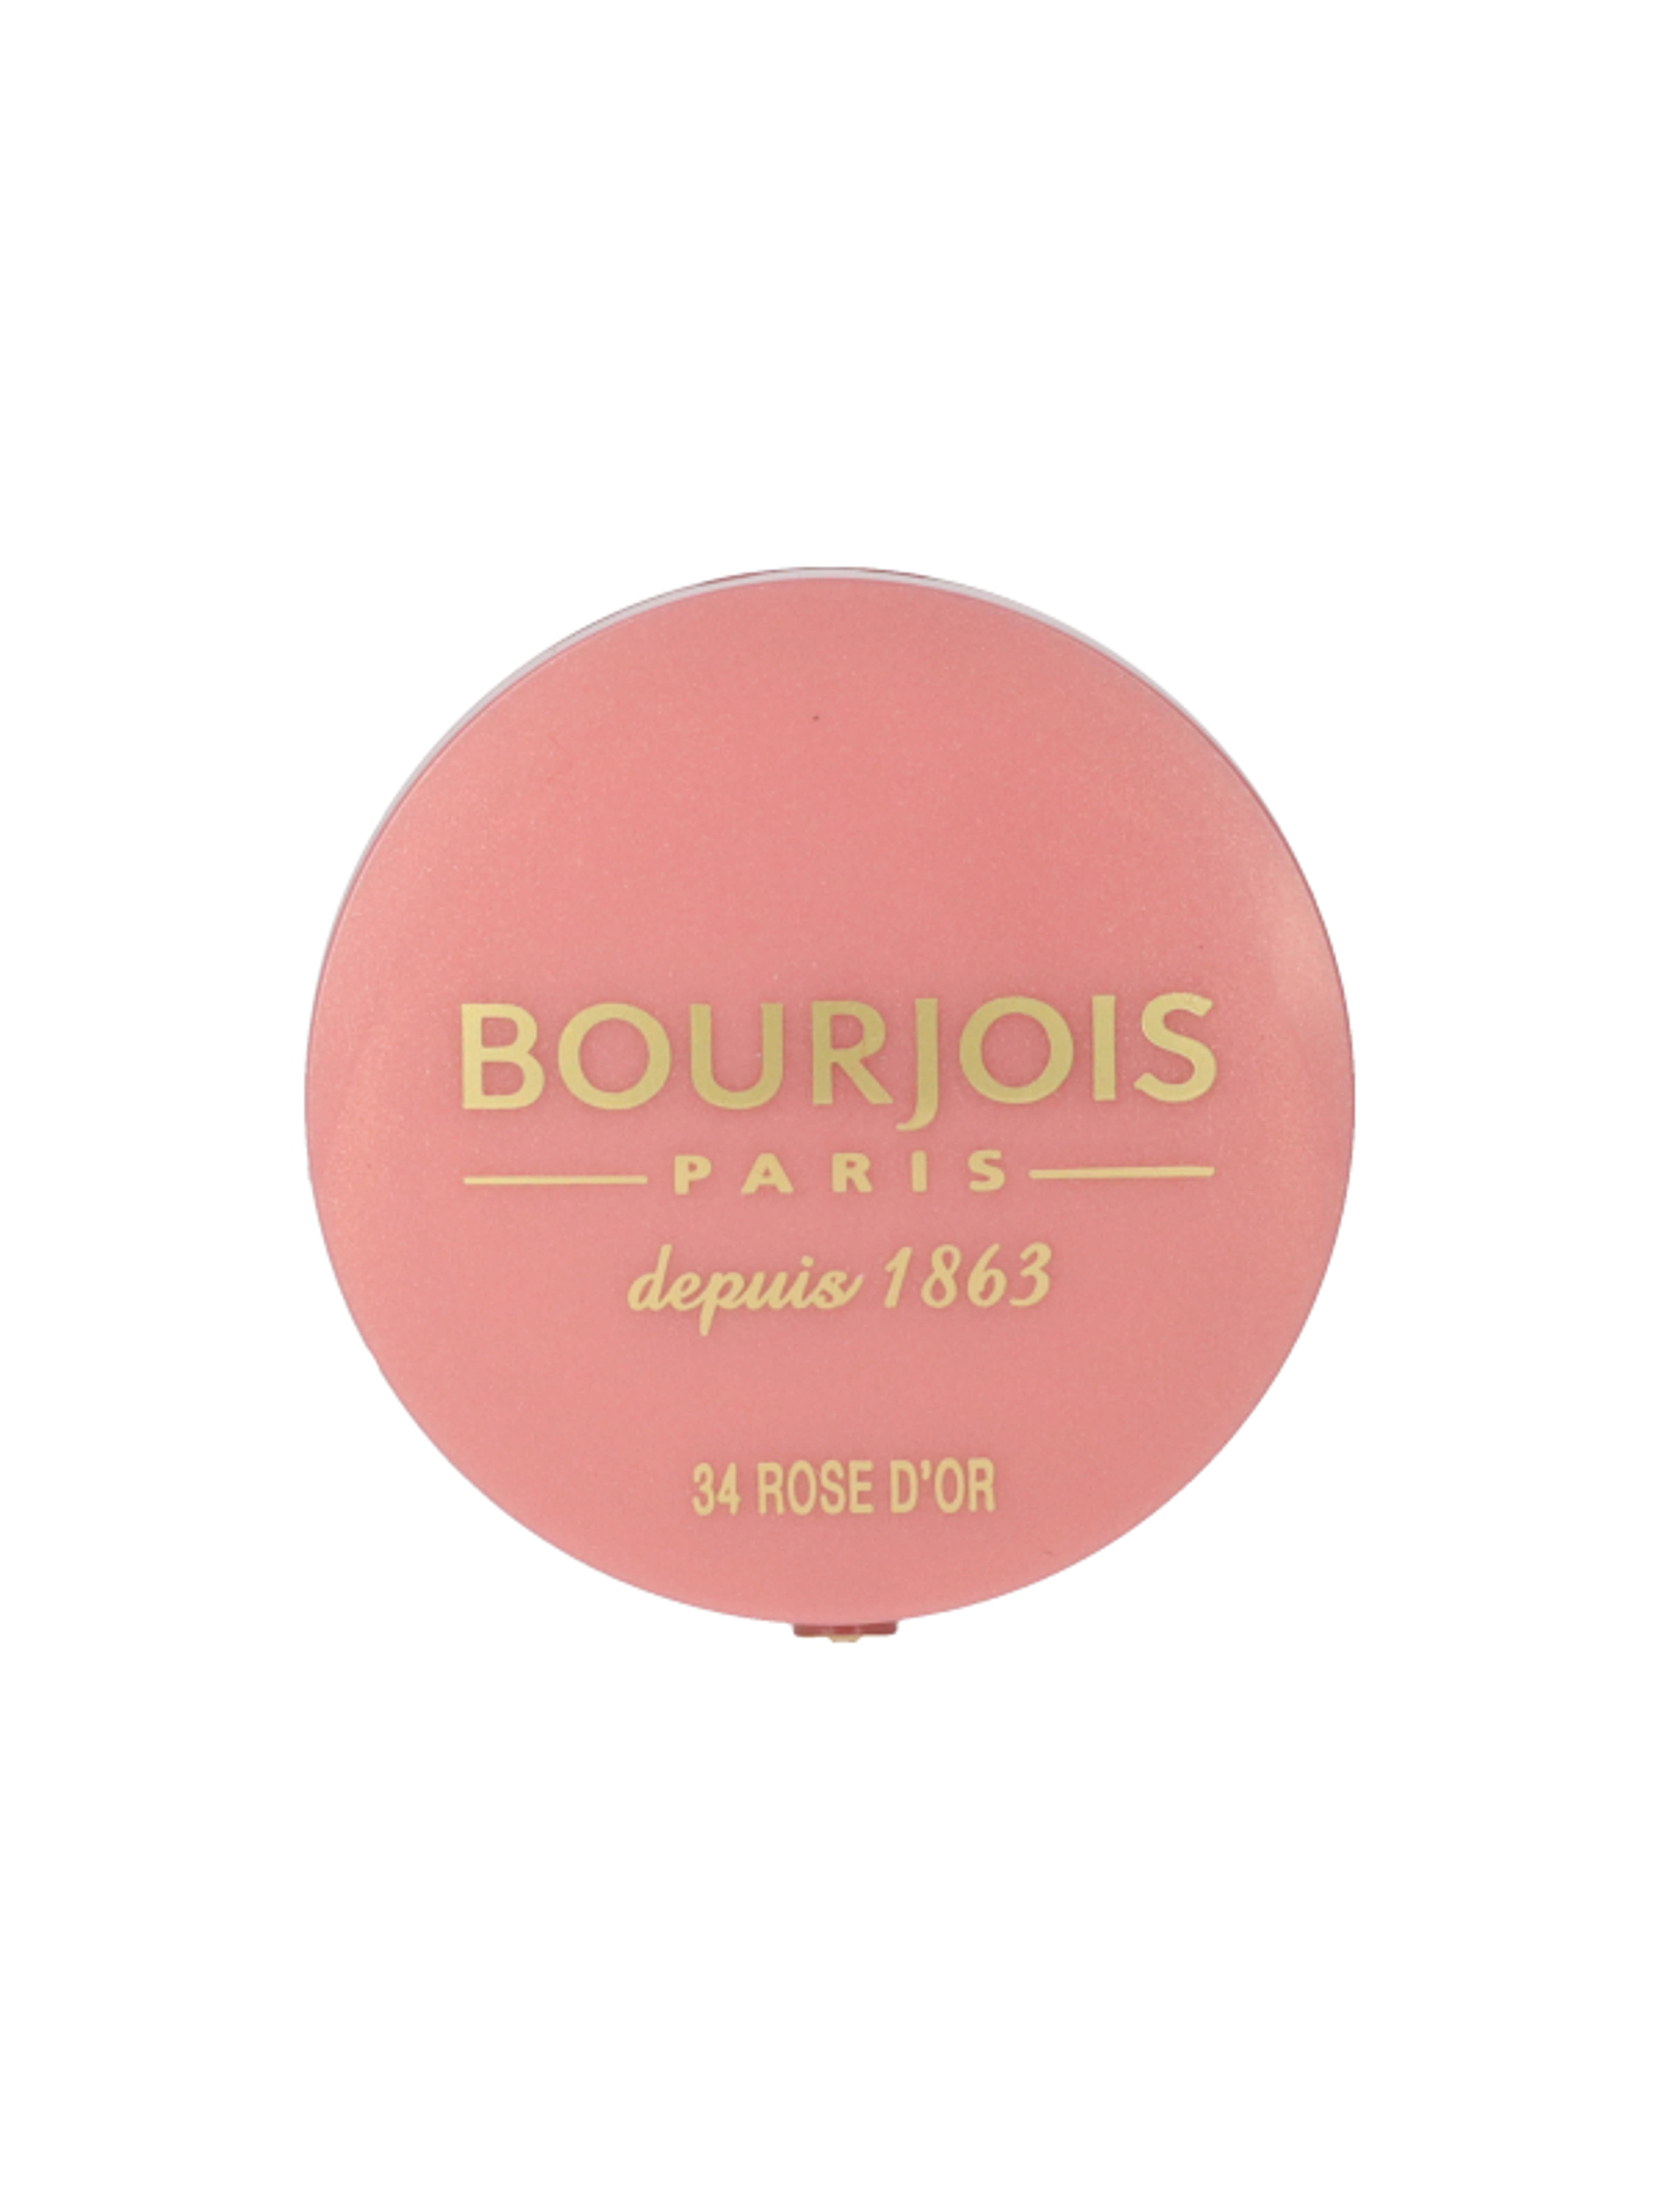 Bourjois Little Round Pot pirosító /034 - 1 db-1